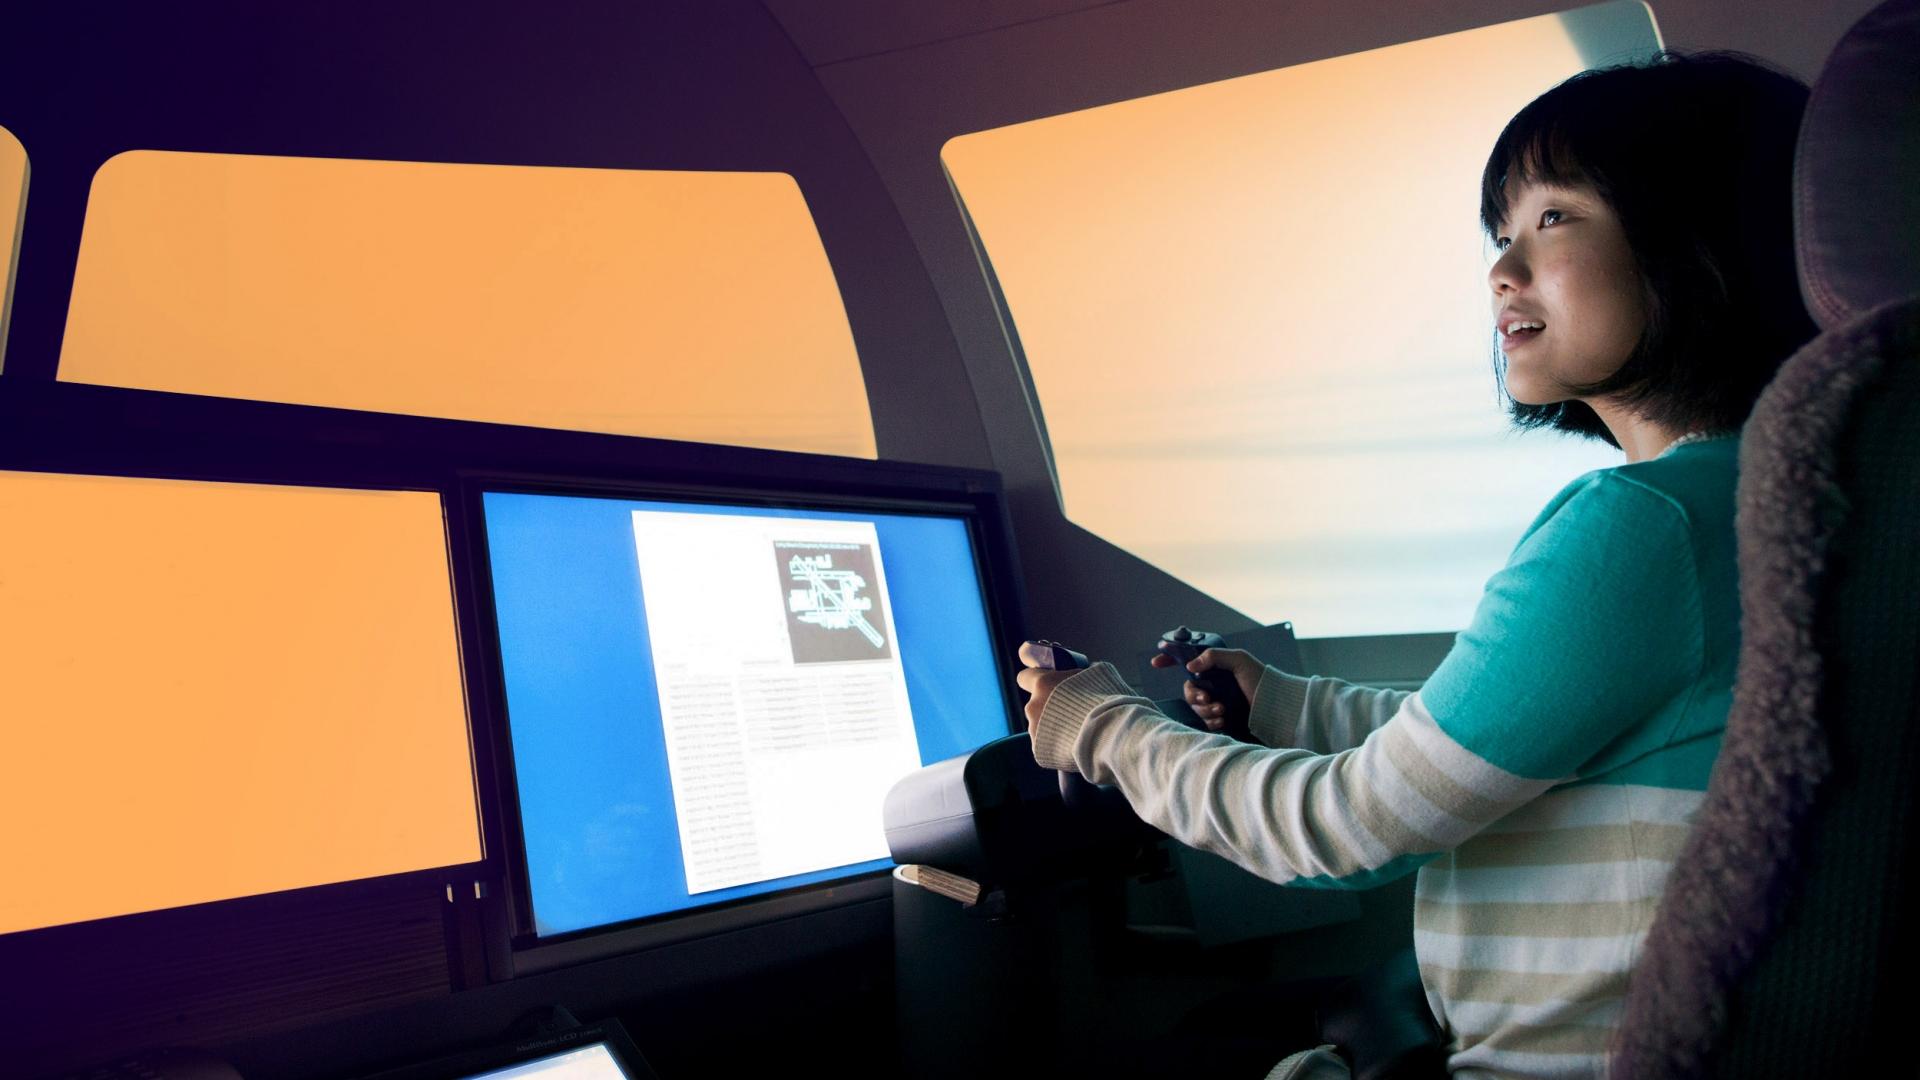 Boeing Simulator Women in Engineering